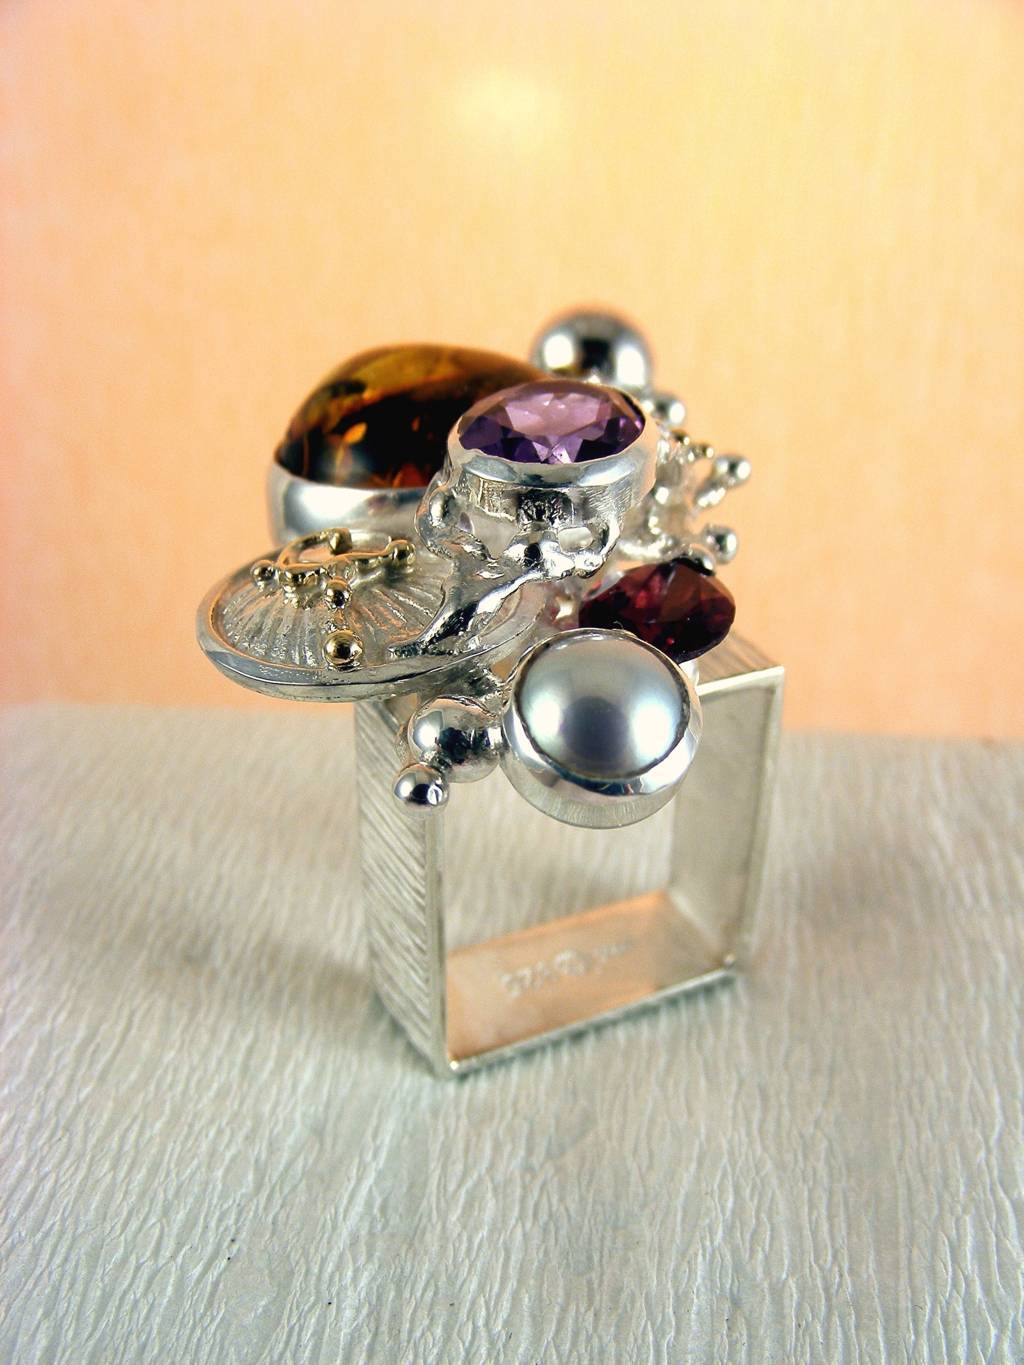 módní šperky, modní styl, sběratelská položka, šperky vyrobené ze stříbra a zlata, jantar, ametyst, granát, perla, Gregory Pyra Piro kvadrátový prstýnek čís. 1710